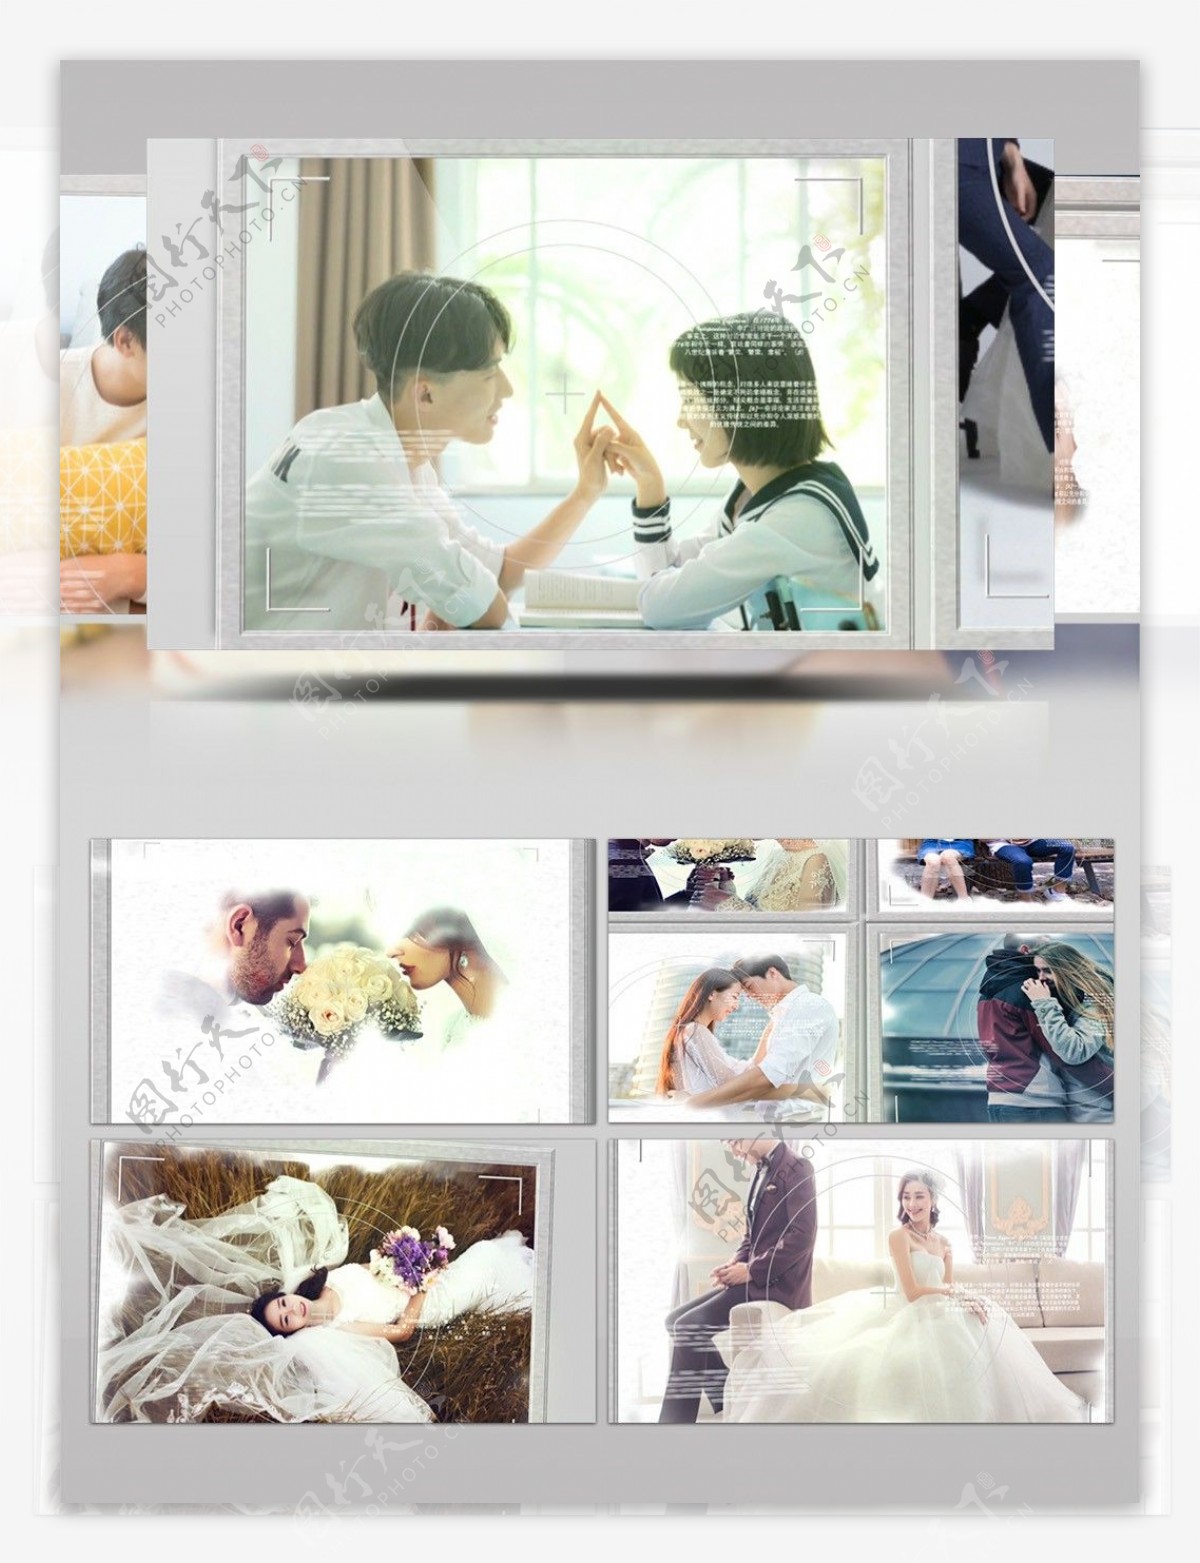 情侣照片墙特效相册展示AE模板